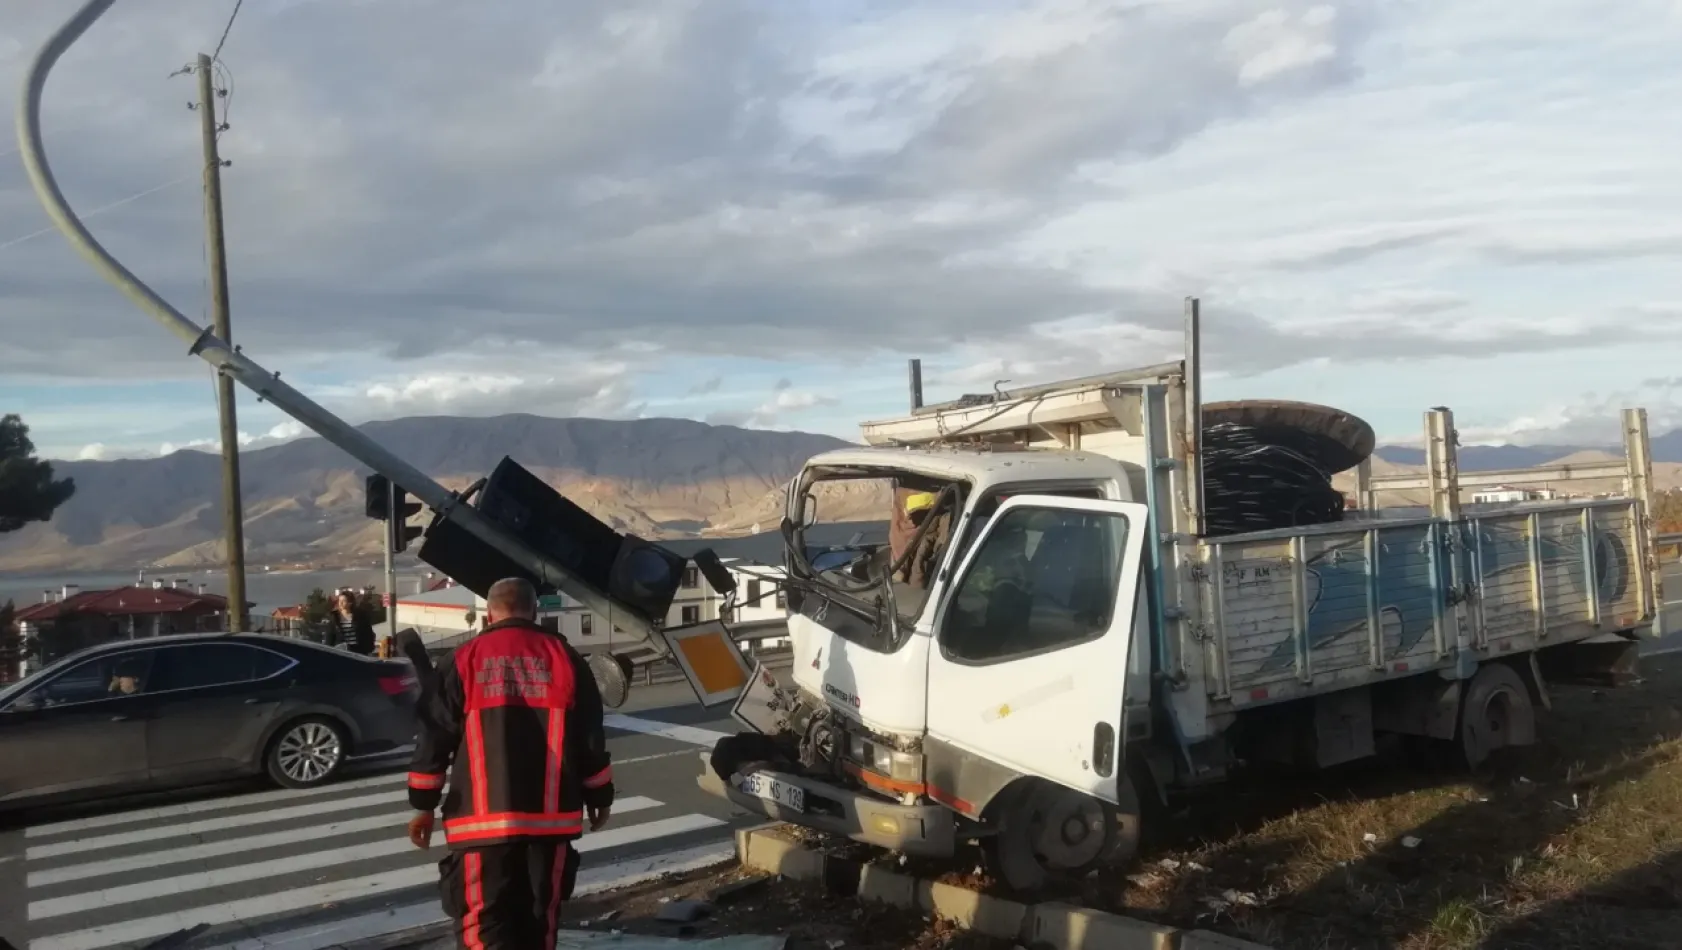 Malatya Elazığ yolu üzeri sıkışmalı trafik kazası